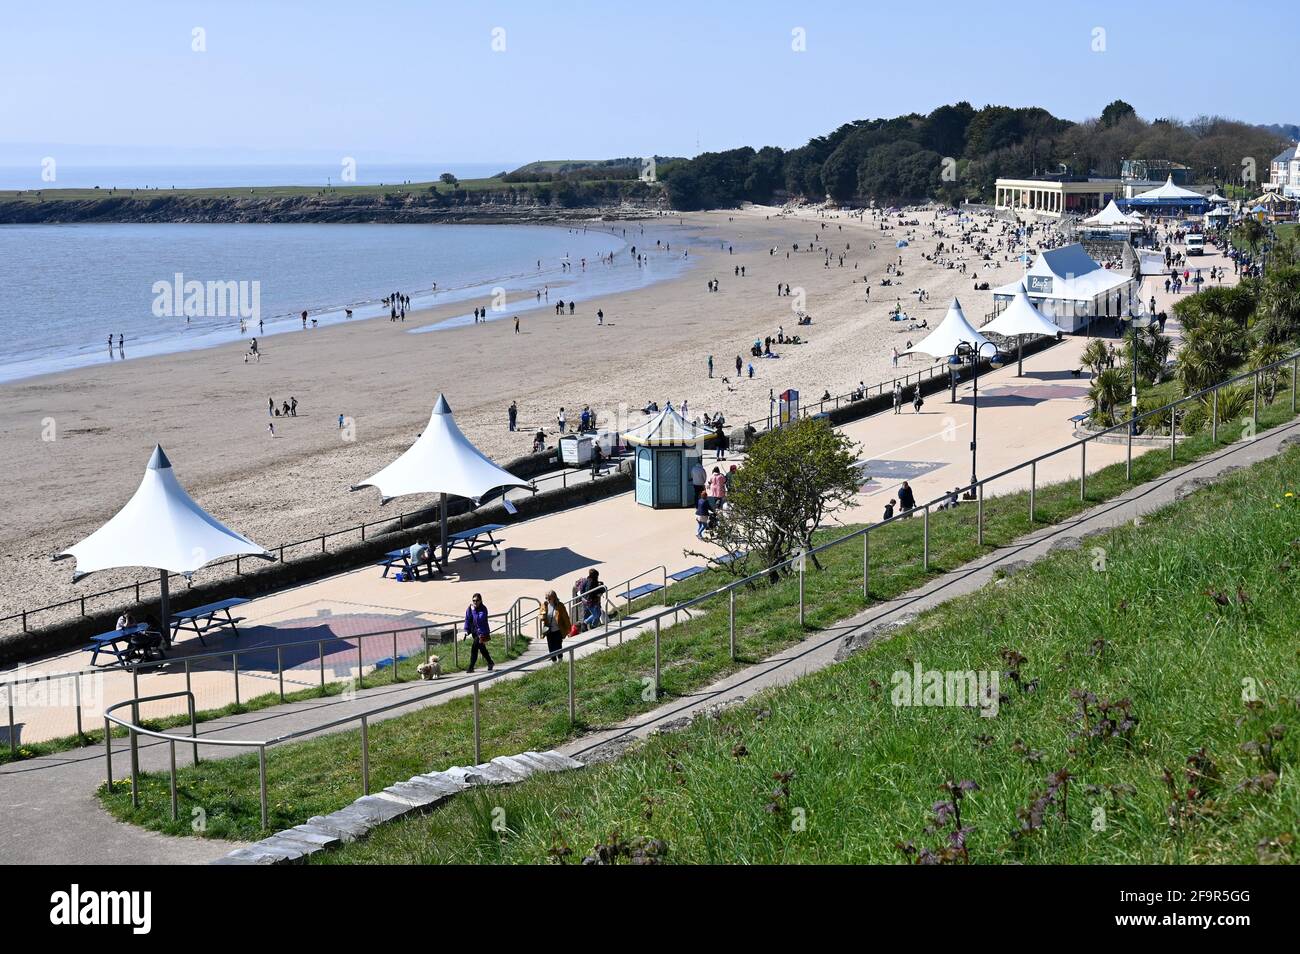 Barry Island, Wales, Großbritannien - 17. April 2021: Barry ist eine lebendige Küstenstadt mit einer belebten High Street, wunderschönen Parks und farbenfrohen Strandhütten. Stockfoto